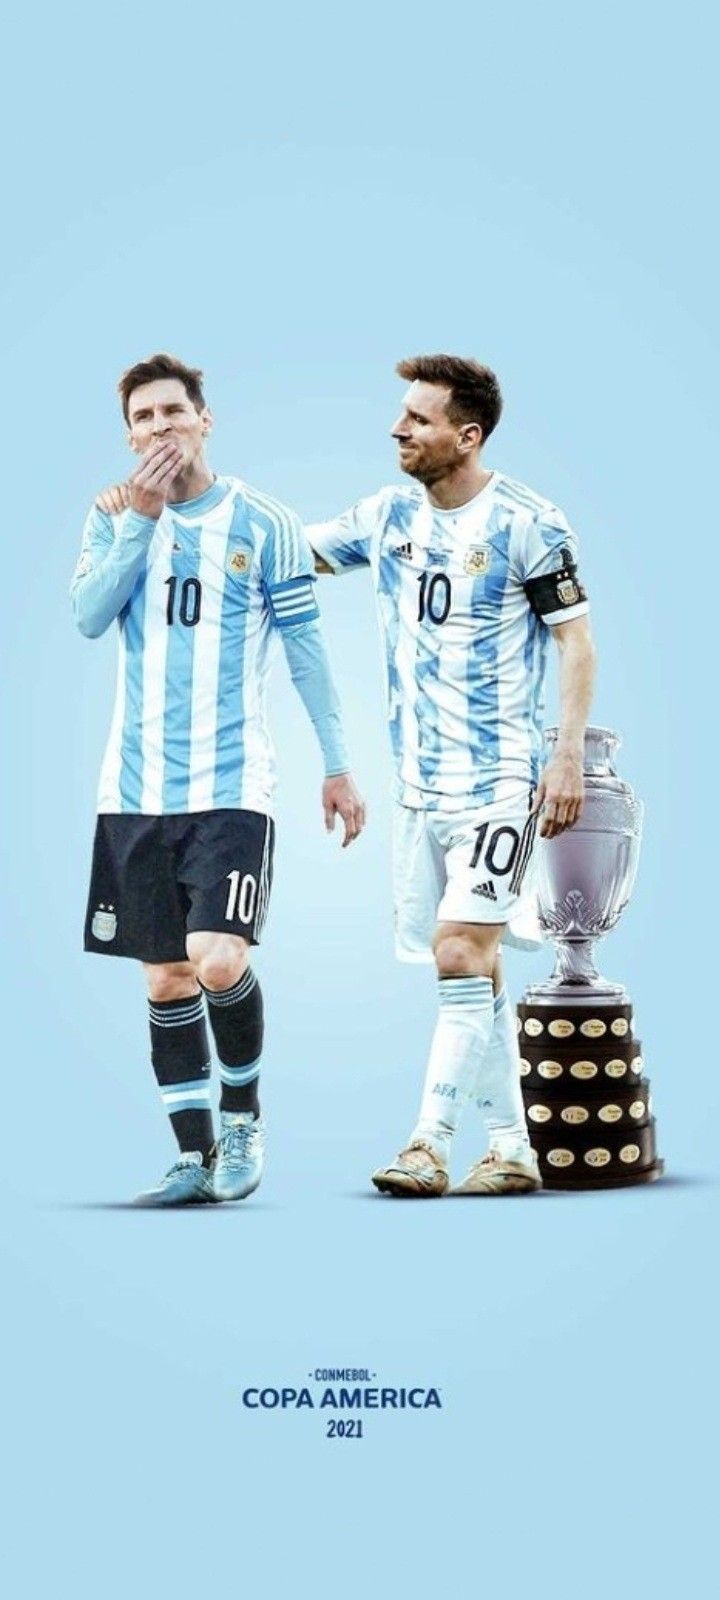 Messi Campeon Copa America 2021. Lionel messi, Messi argentina, Lionel messi instagram